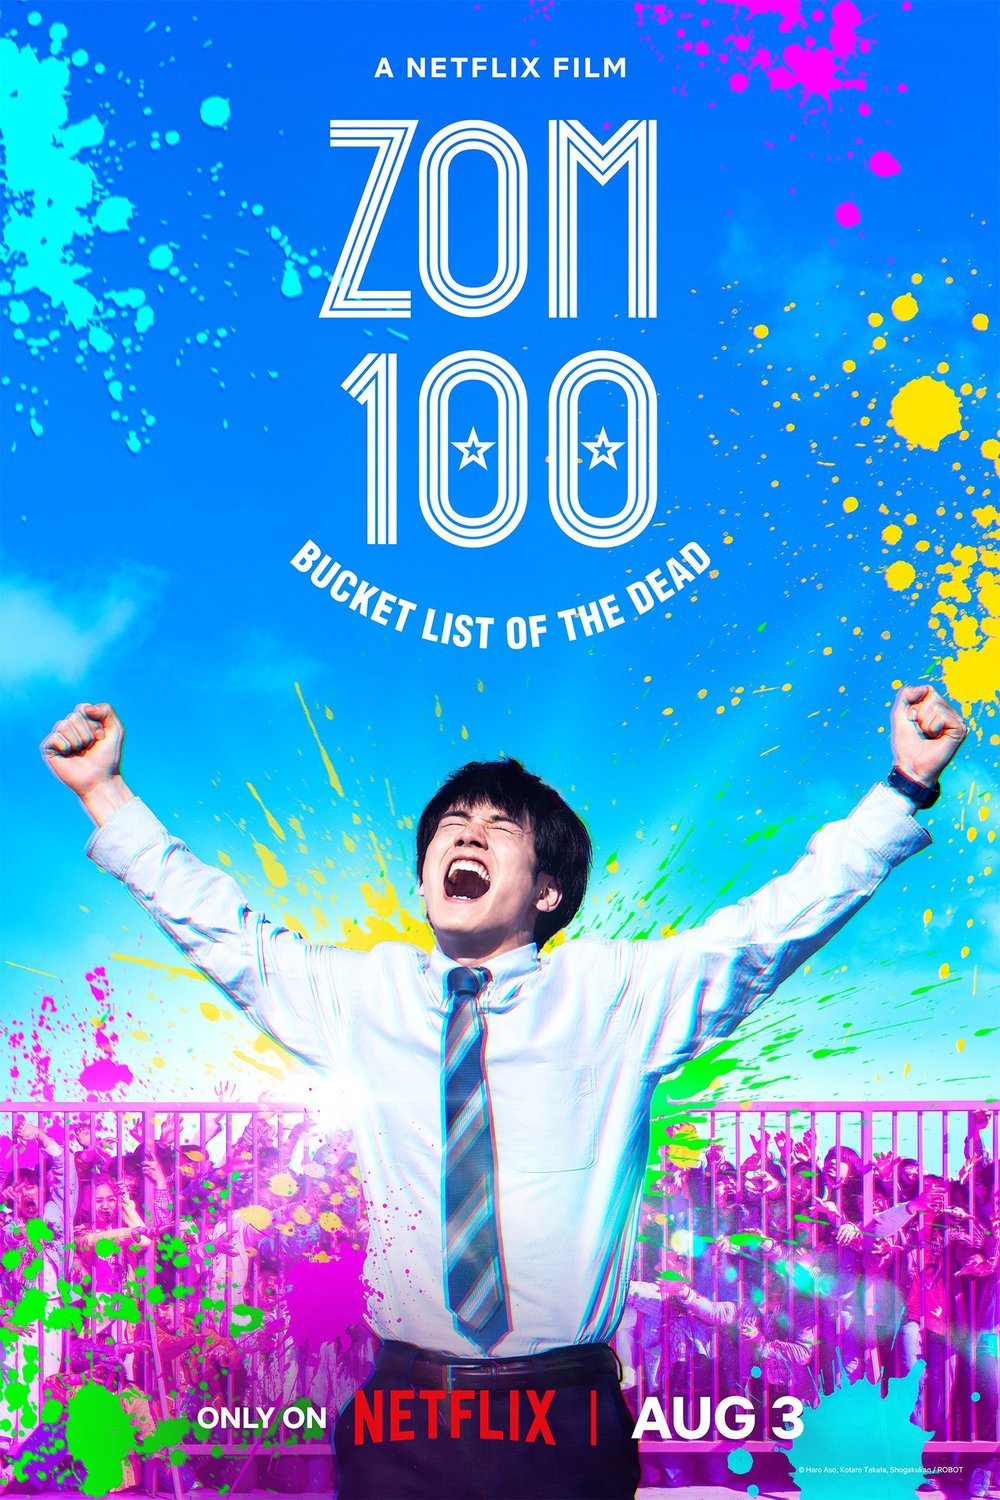 L'affiche originale du film Zom 100: Bucket List of the Dead en japonais